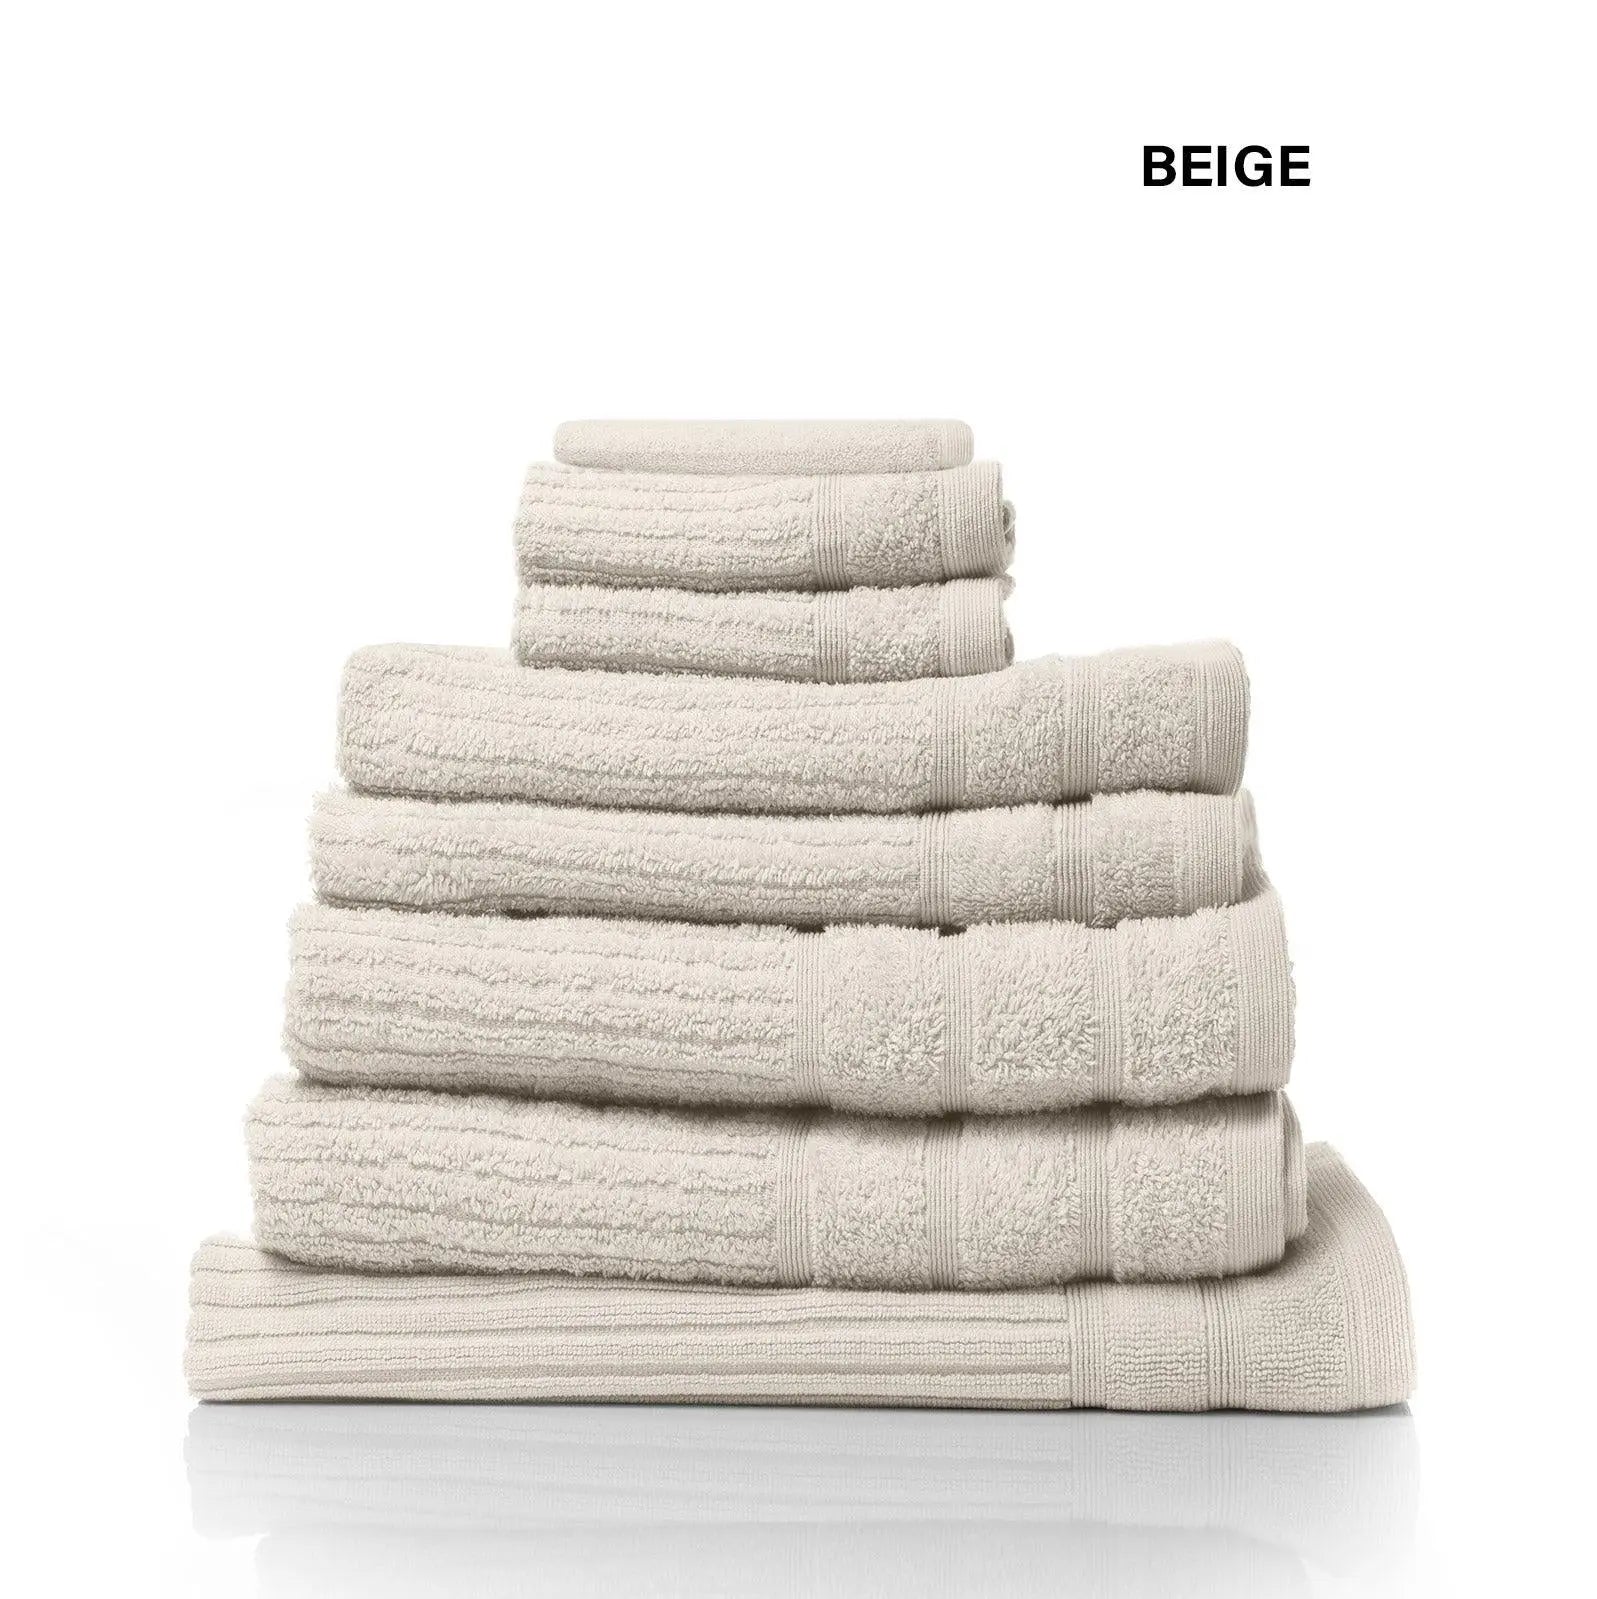 Royal Comfort Eden Egyptian Cotton 600GSM 8 Piece Luxury Bath Towels Set Beige Deals499